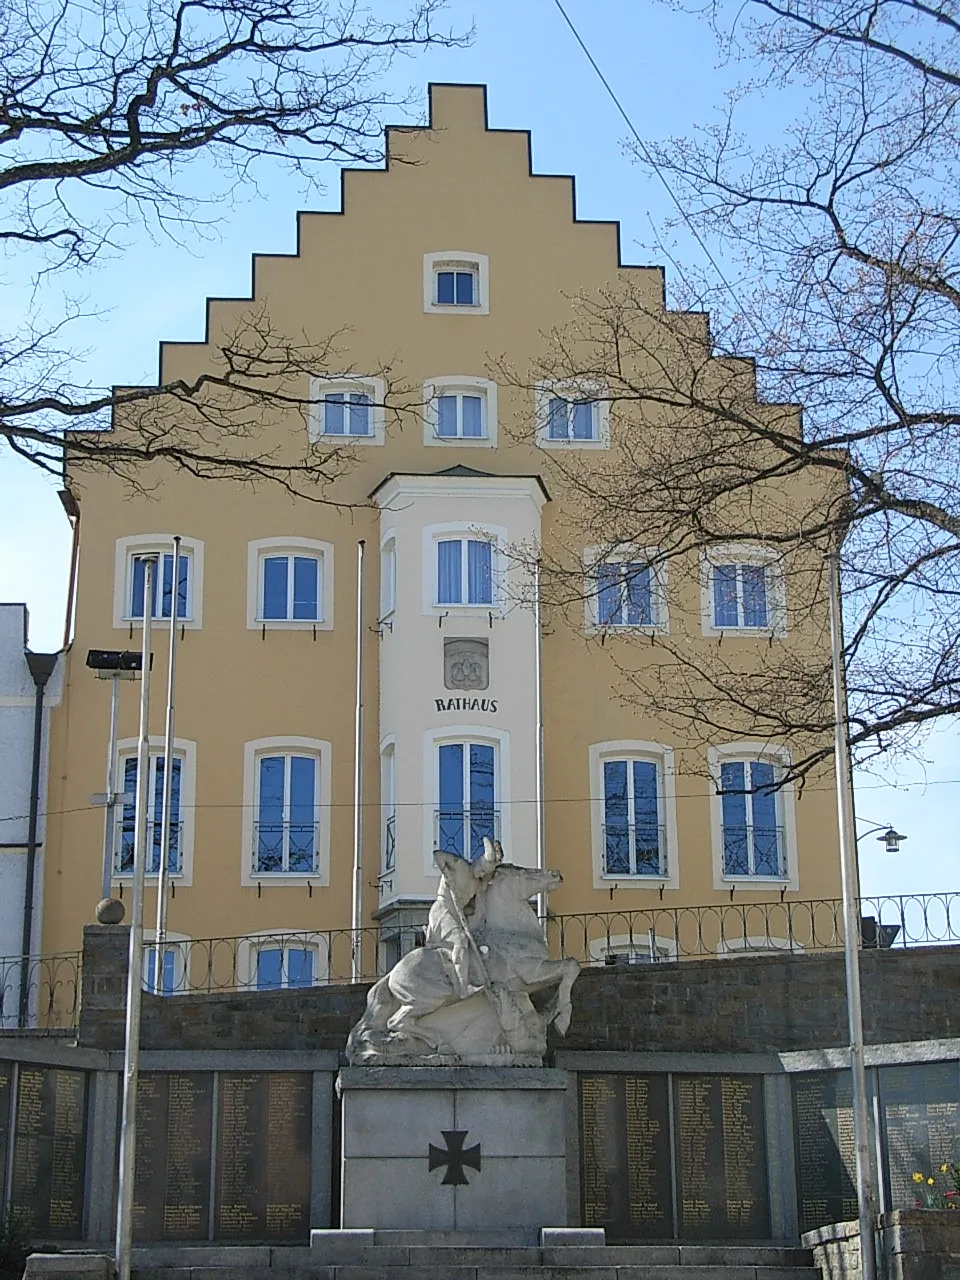 Photo showing: Regen, war memorial and town hall.